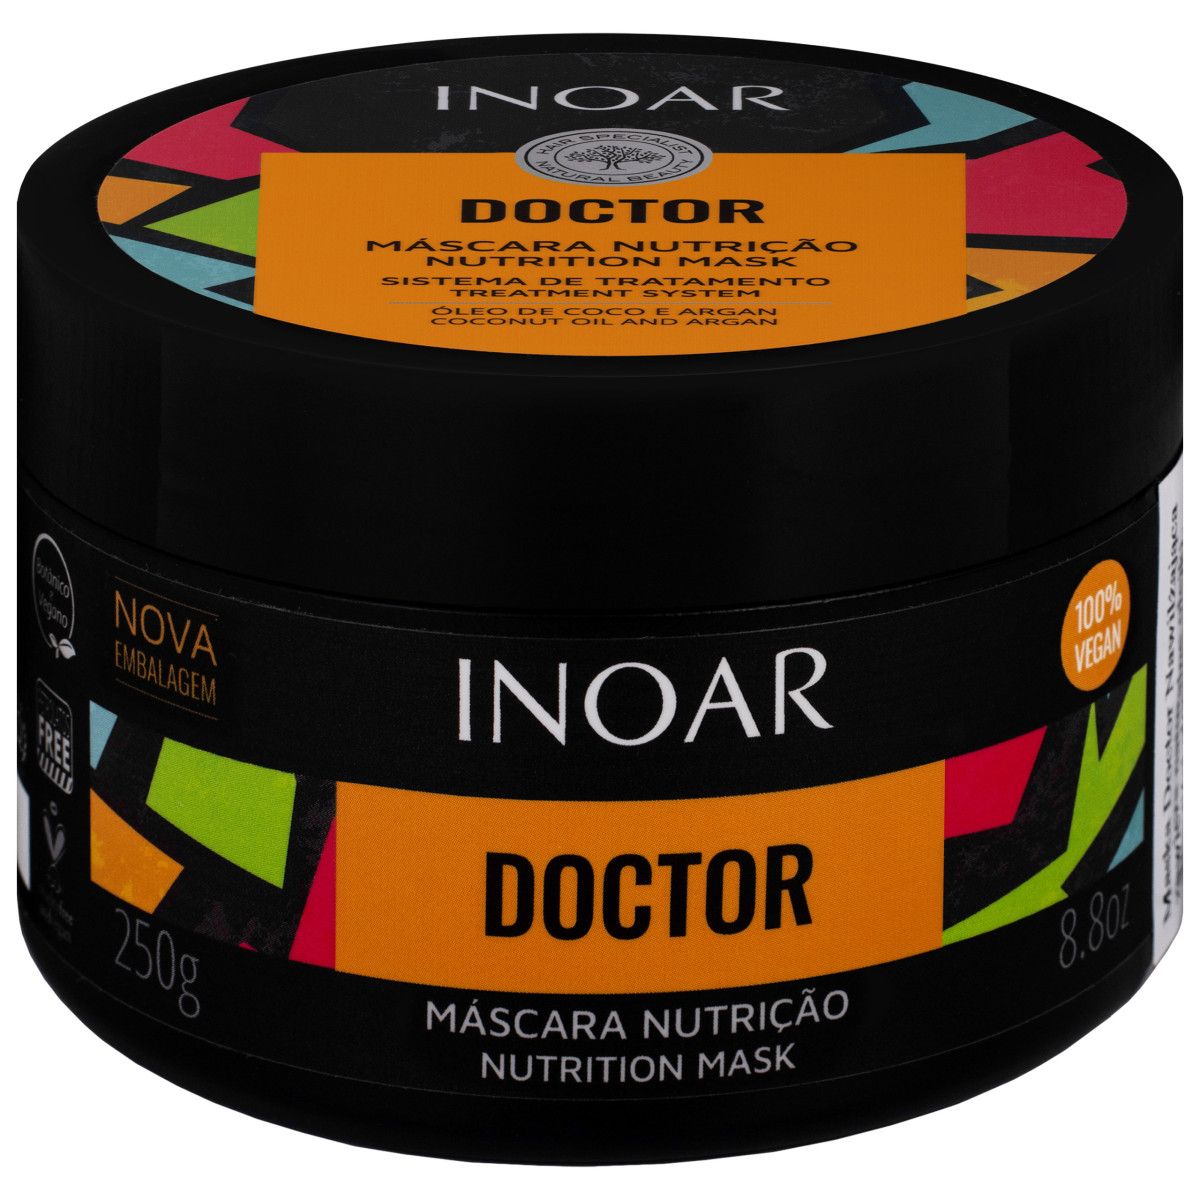 Inoar Doctor nutricao, maska ekstremalnie odżywiająca włosy 250g